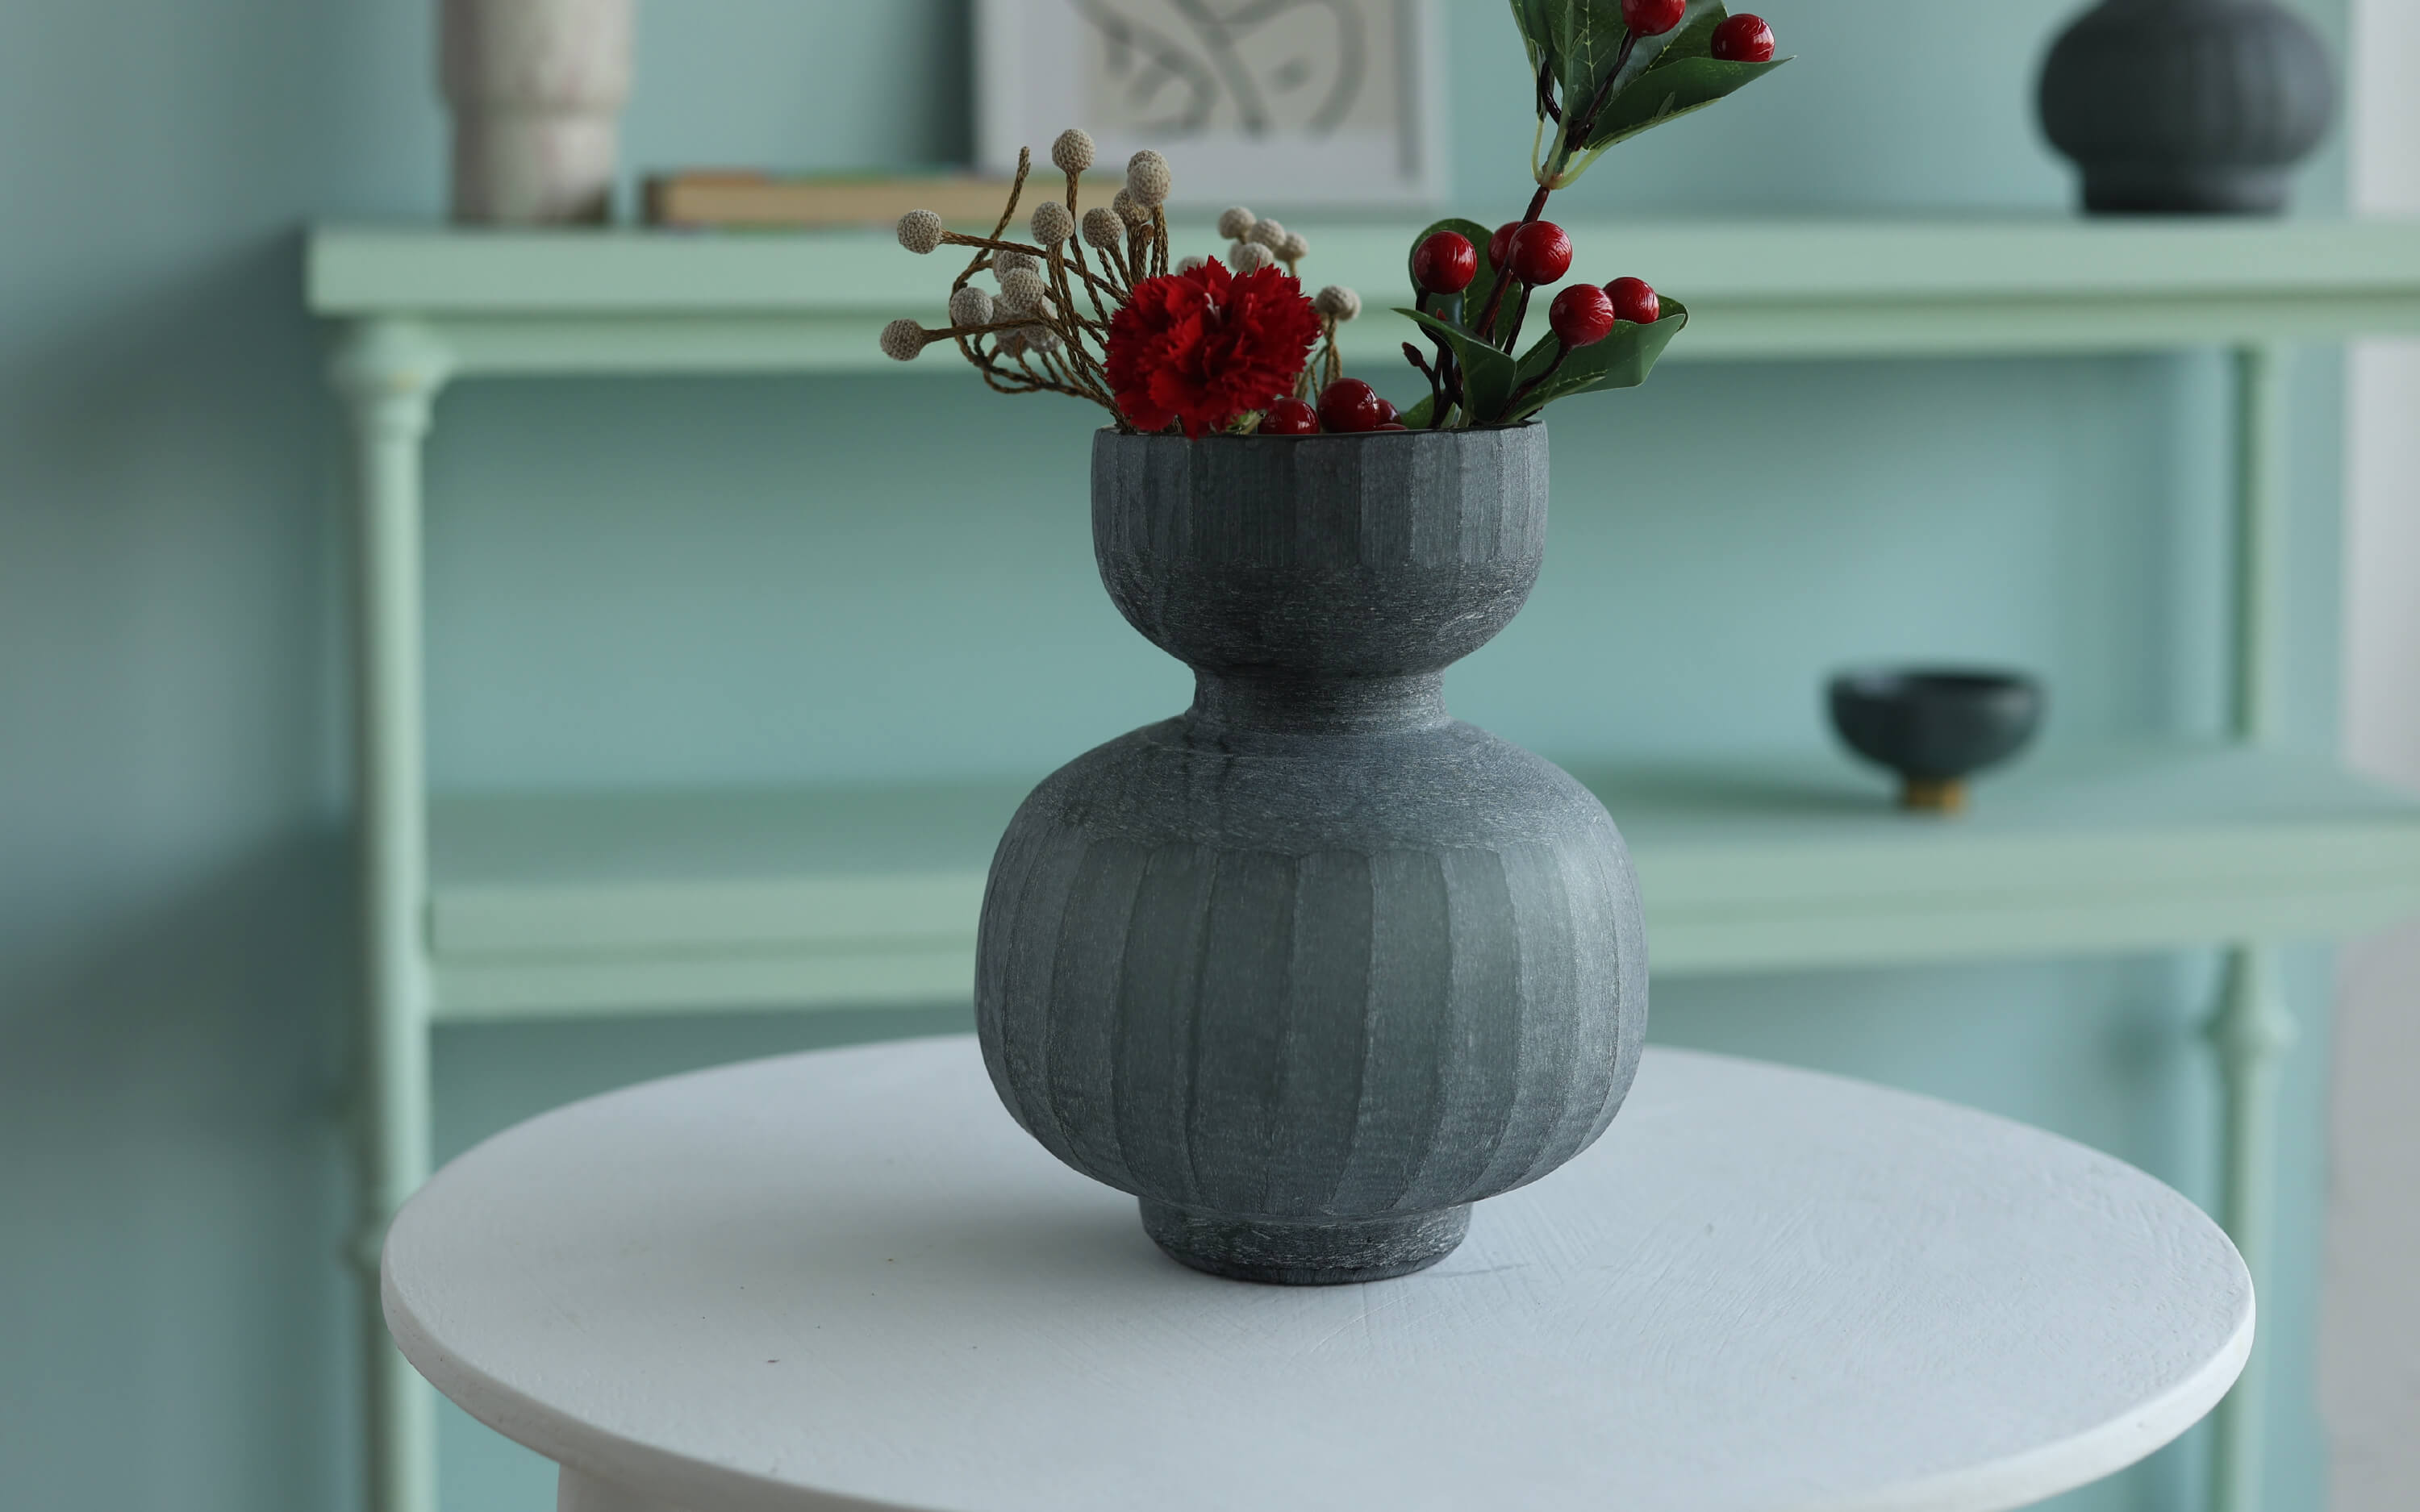  Lota Flower Glass Vase in dark color for home decor ideas  2023- Orange Tree Homes Pvt Ltd.